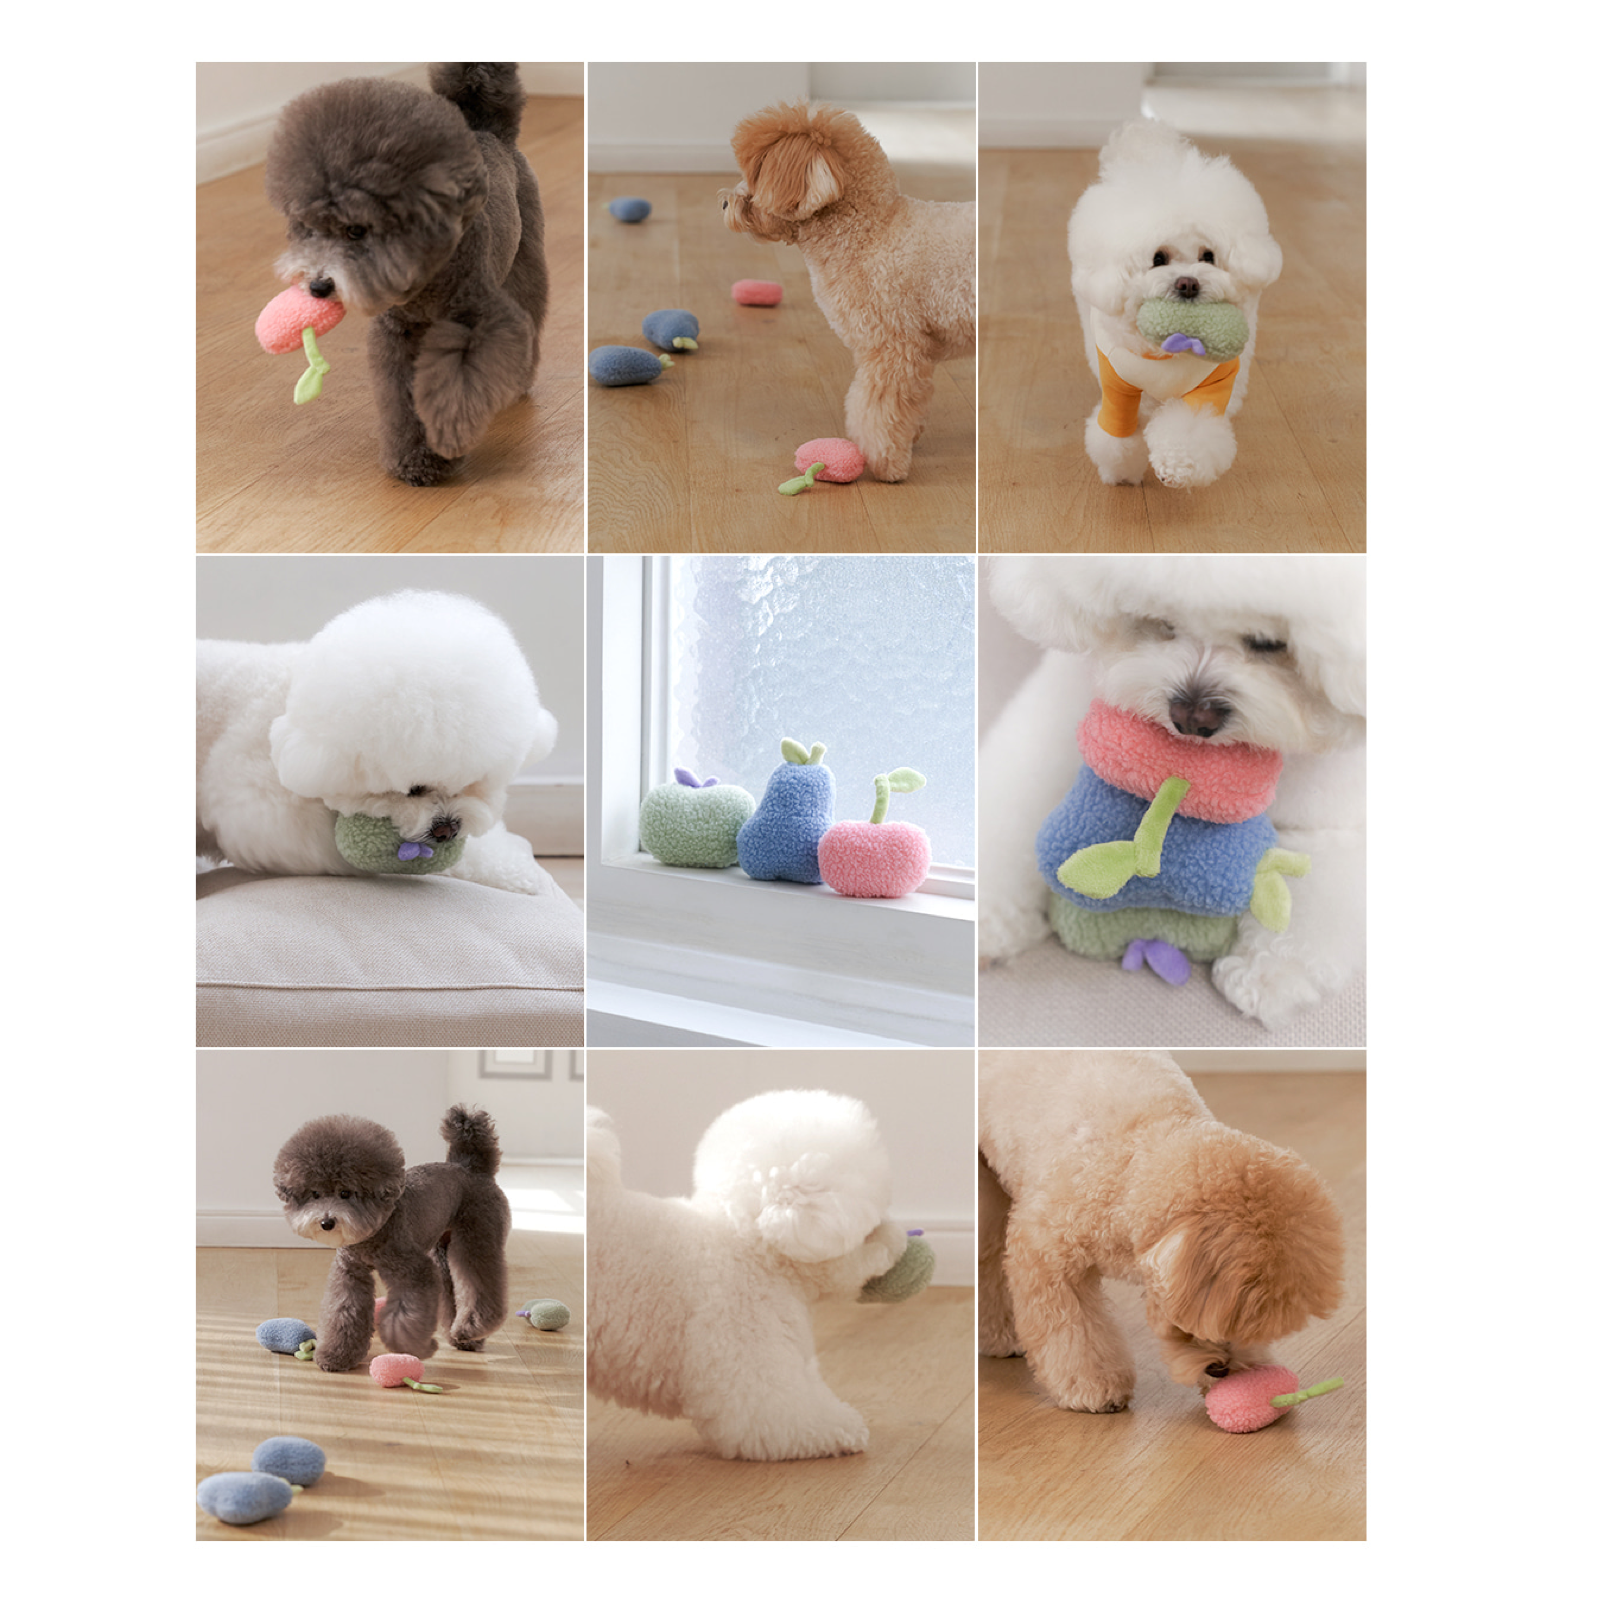 韓國 likalika 水果系列貓狗玩具